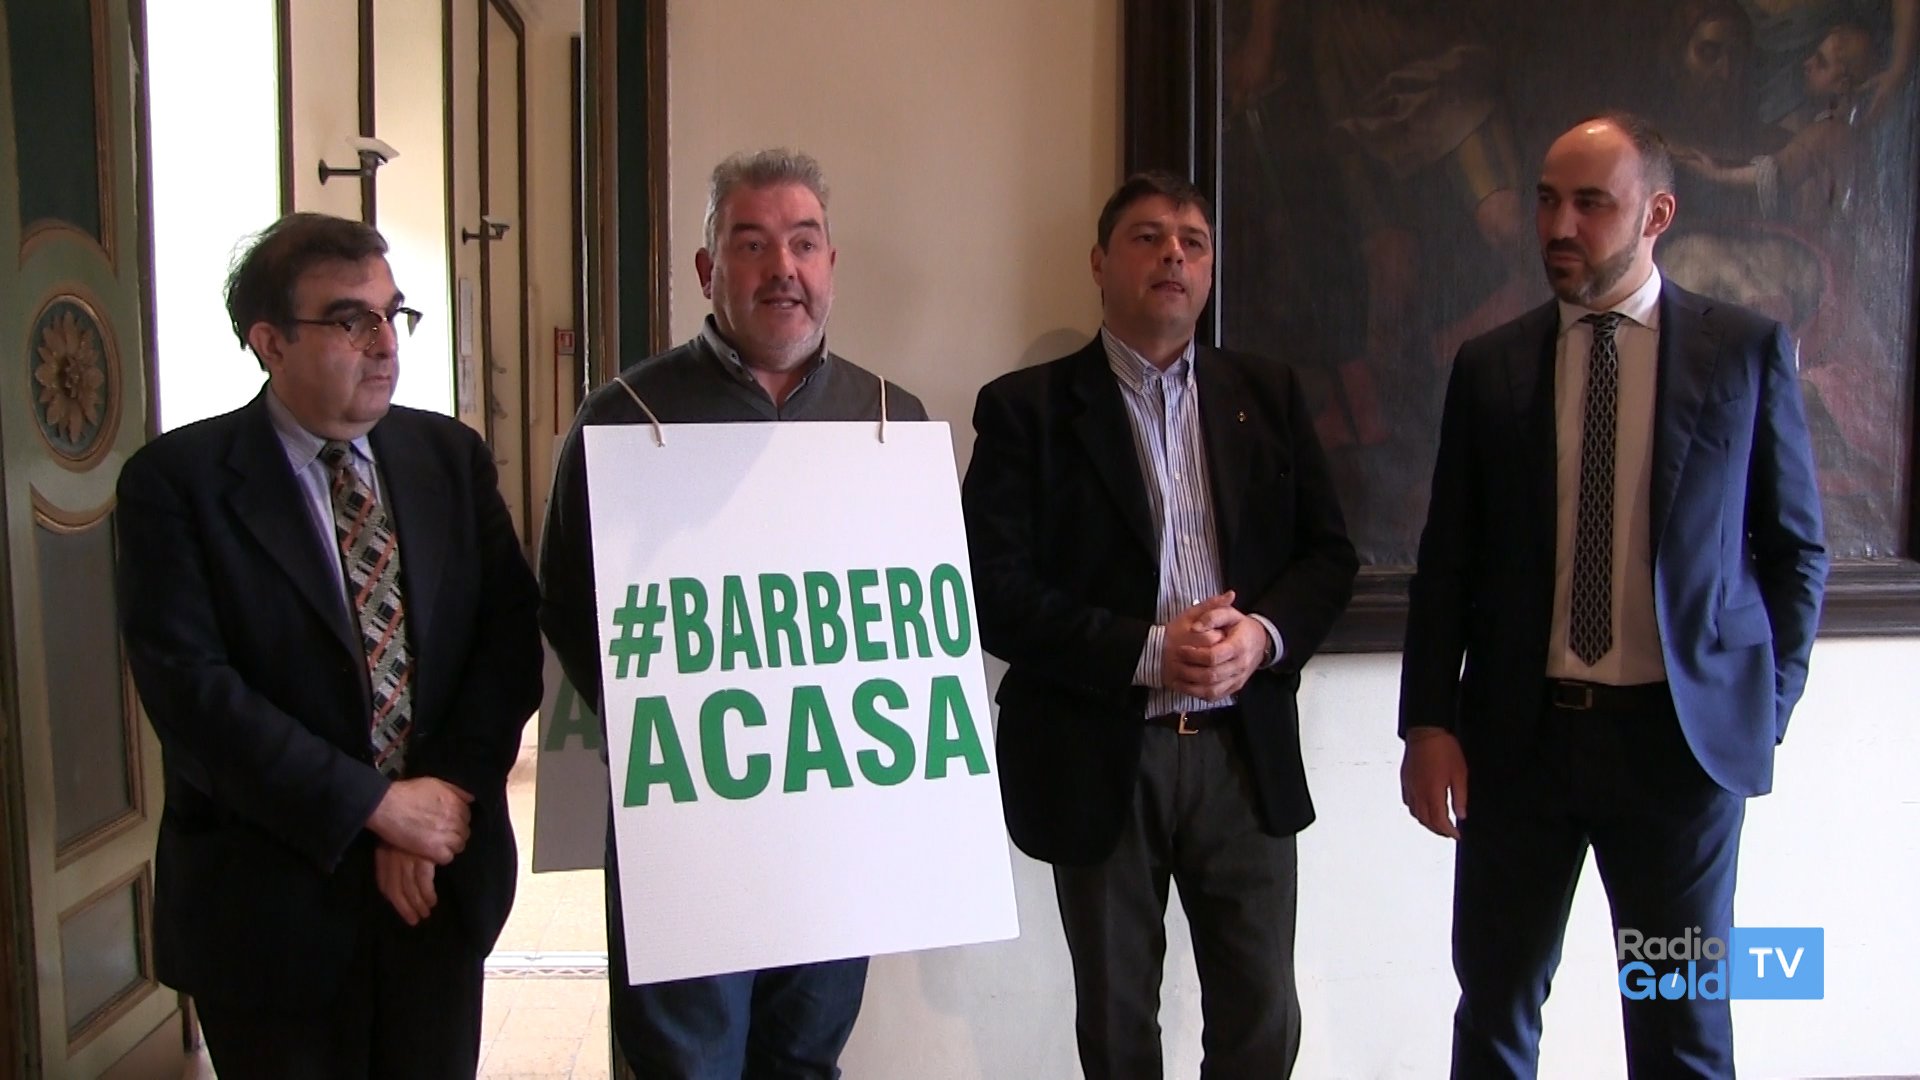 “A Valenza non va”: parte la raccolta firme per far dimettere Barbero